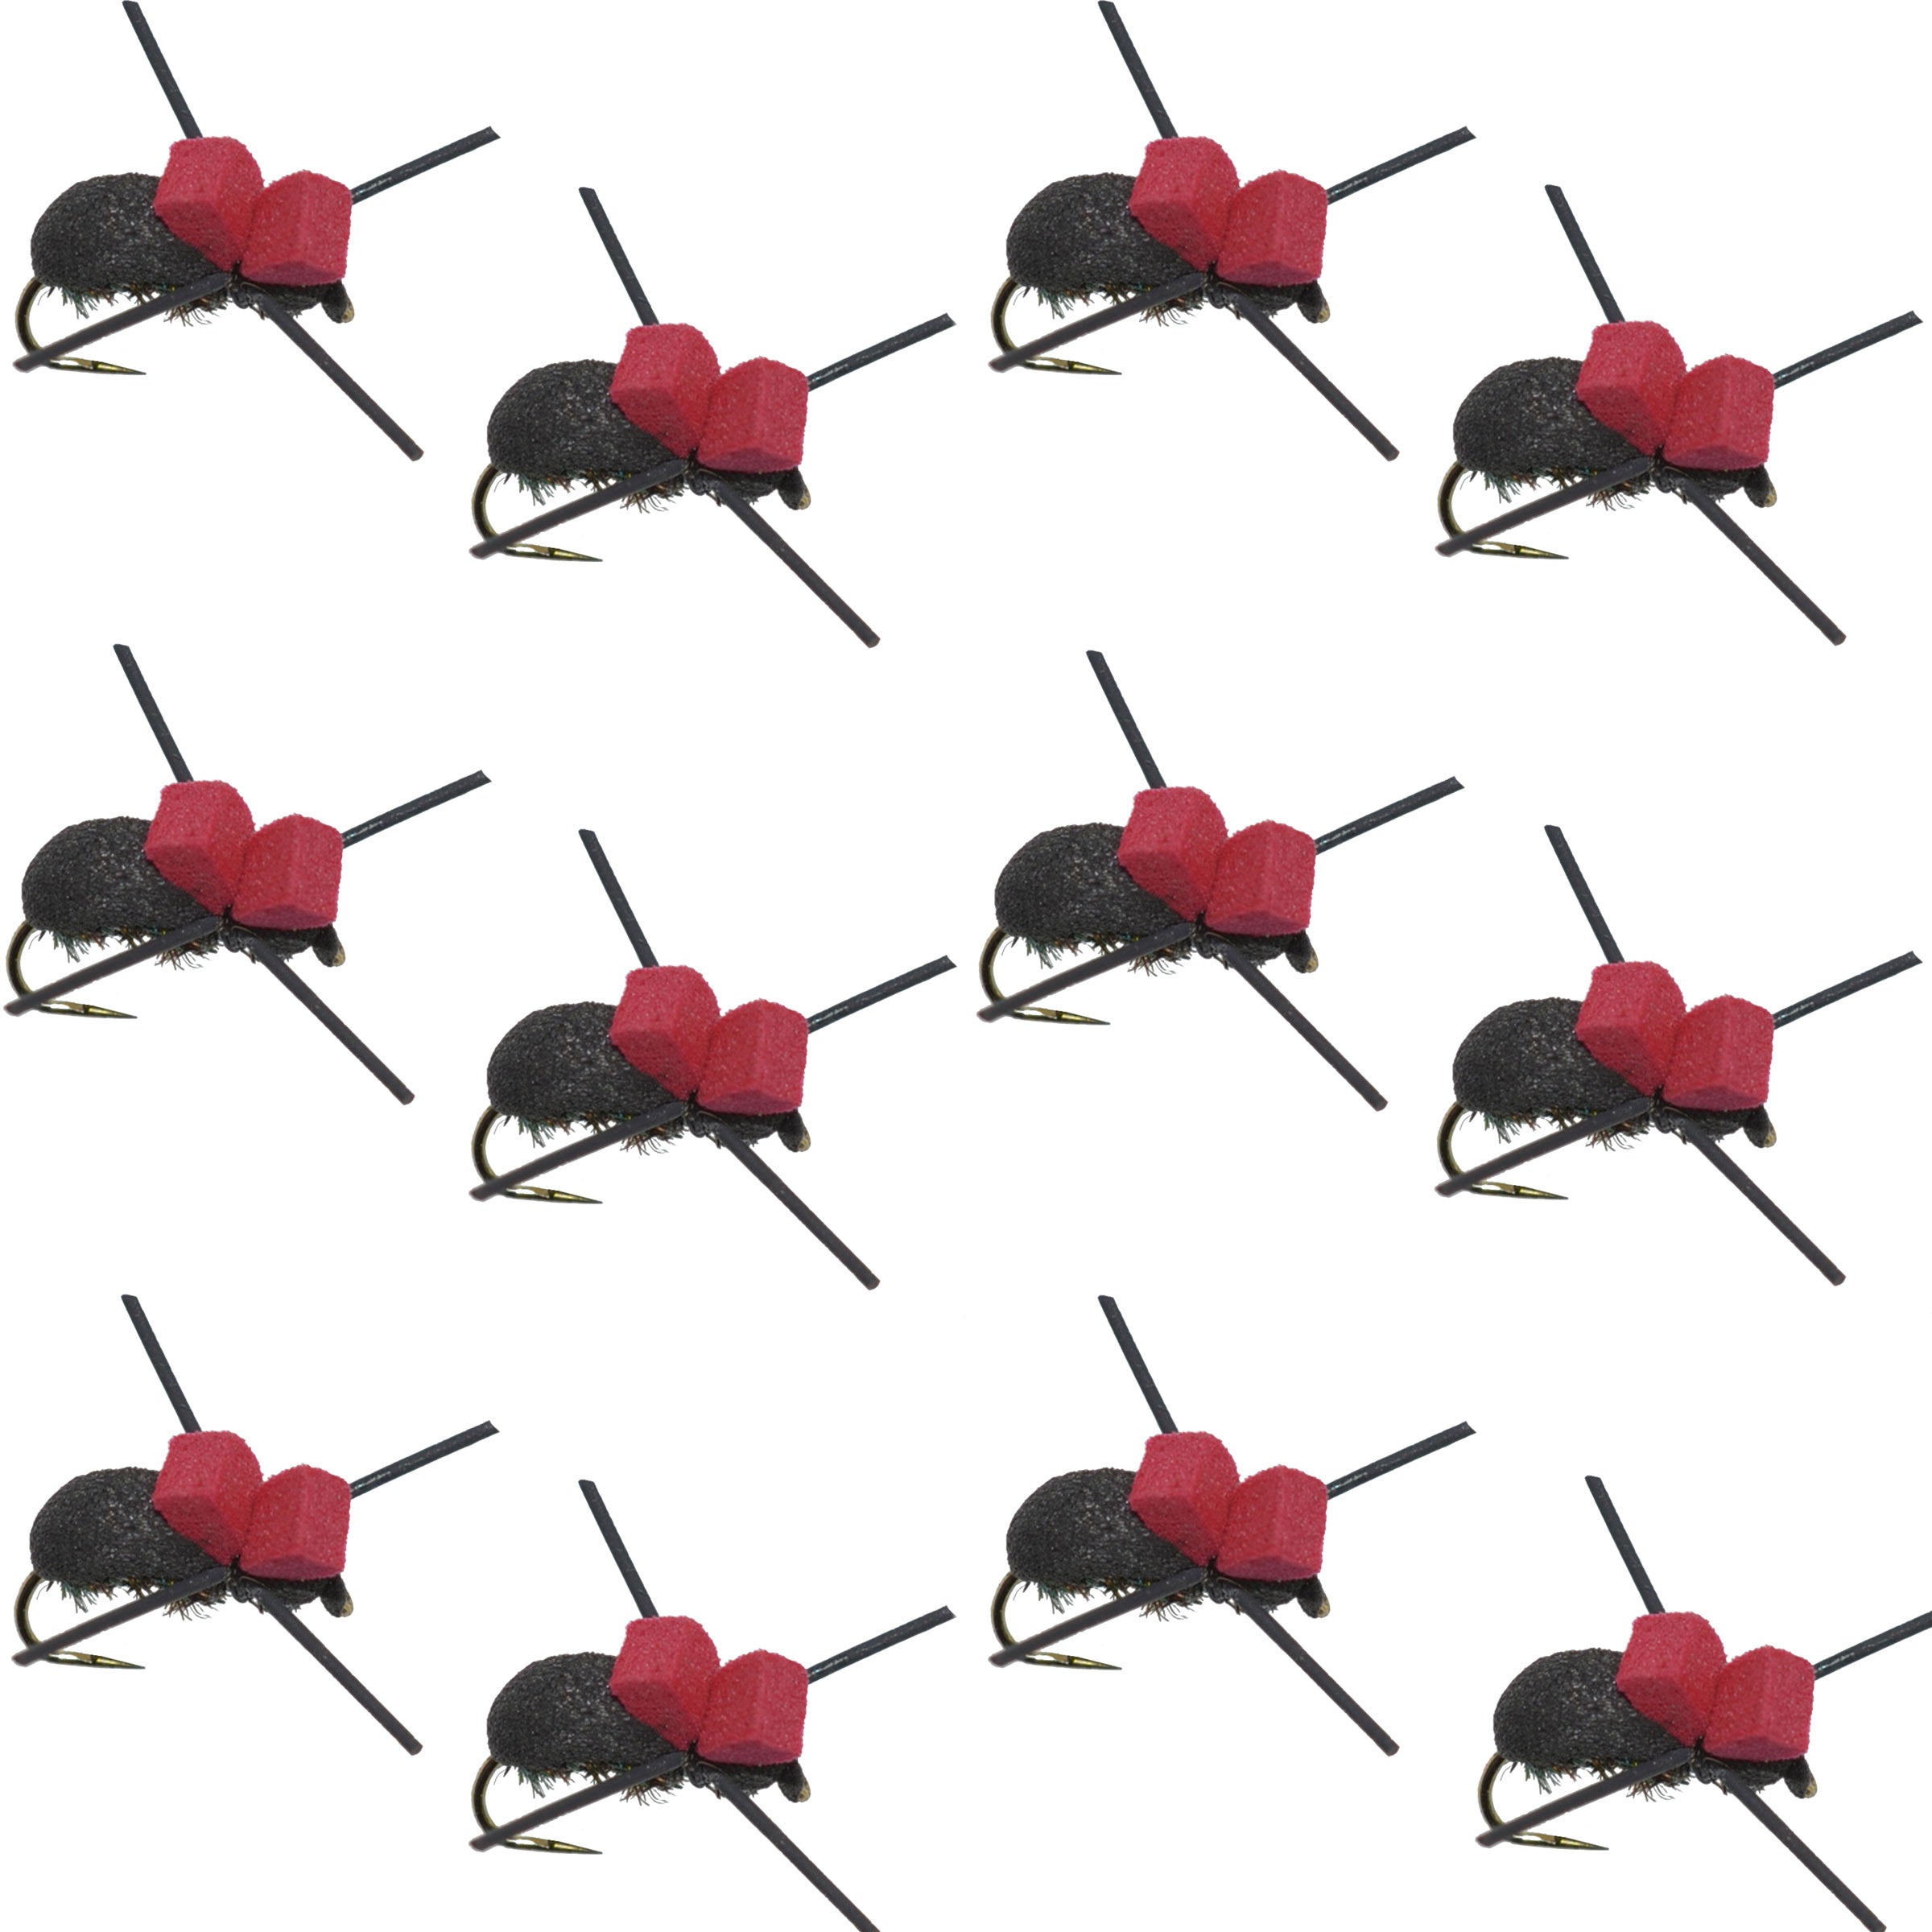 Moscas de pesca con mosca seca para trucha terrestre, escarabajo de espuma negra con parte superior roja sin púas, 1 docena de moscas, tamaño 14